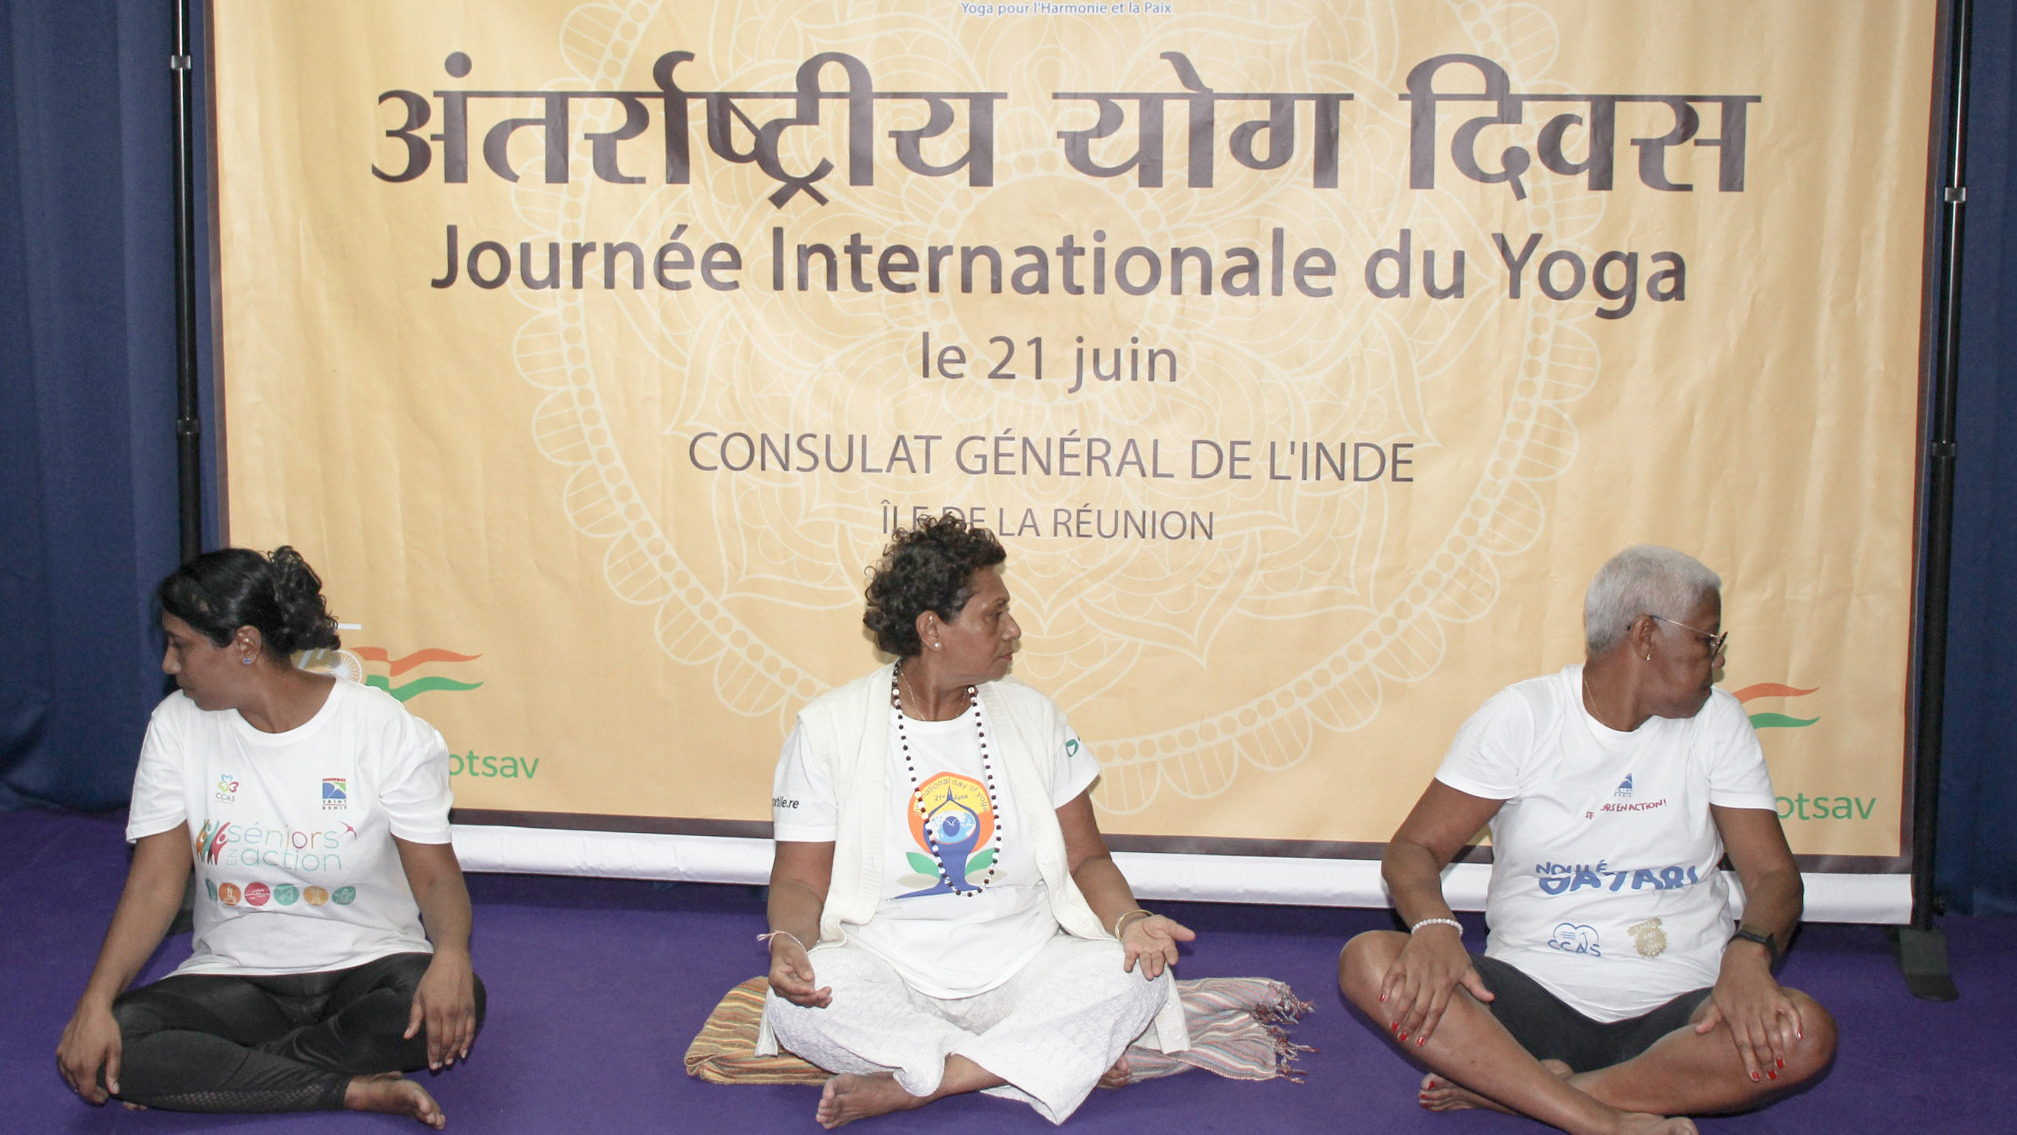 Journée Internationale du Yoga ce 21 juin